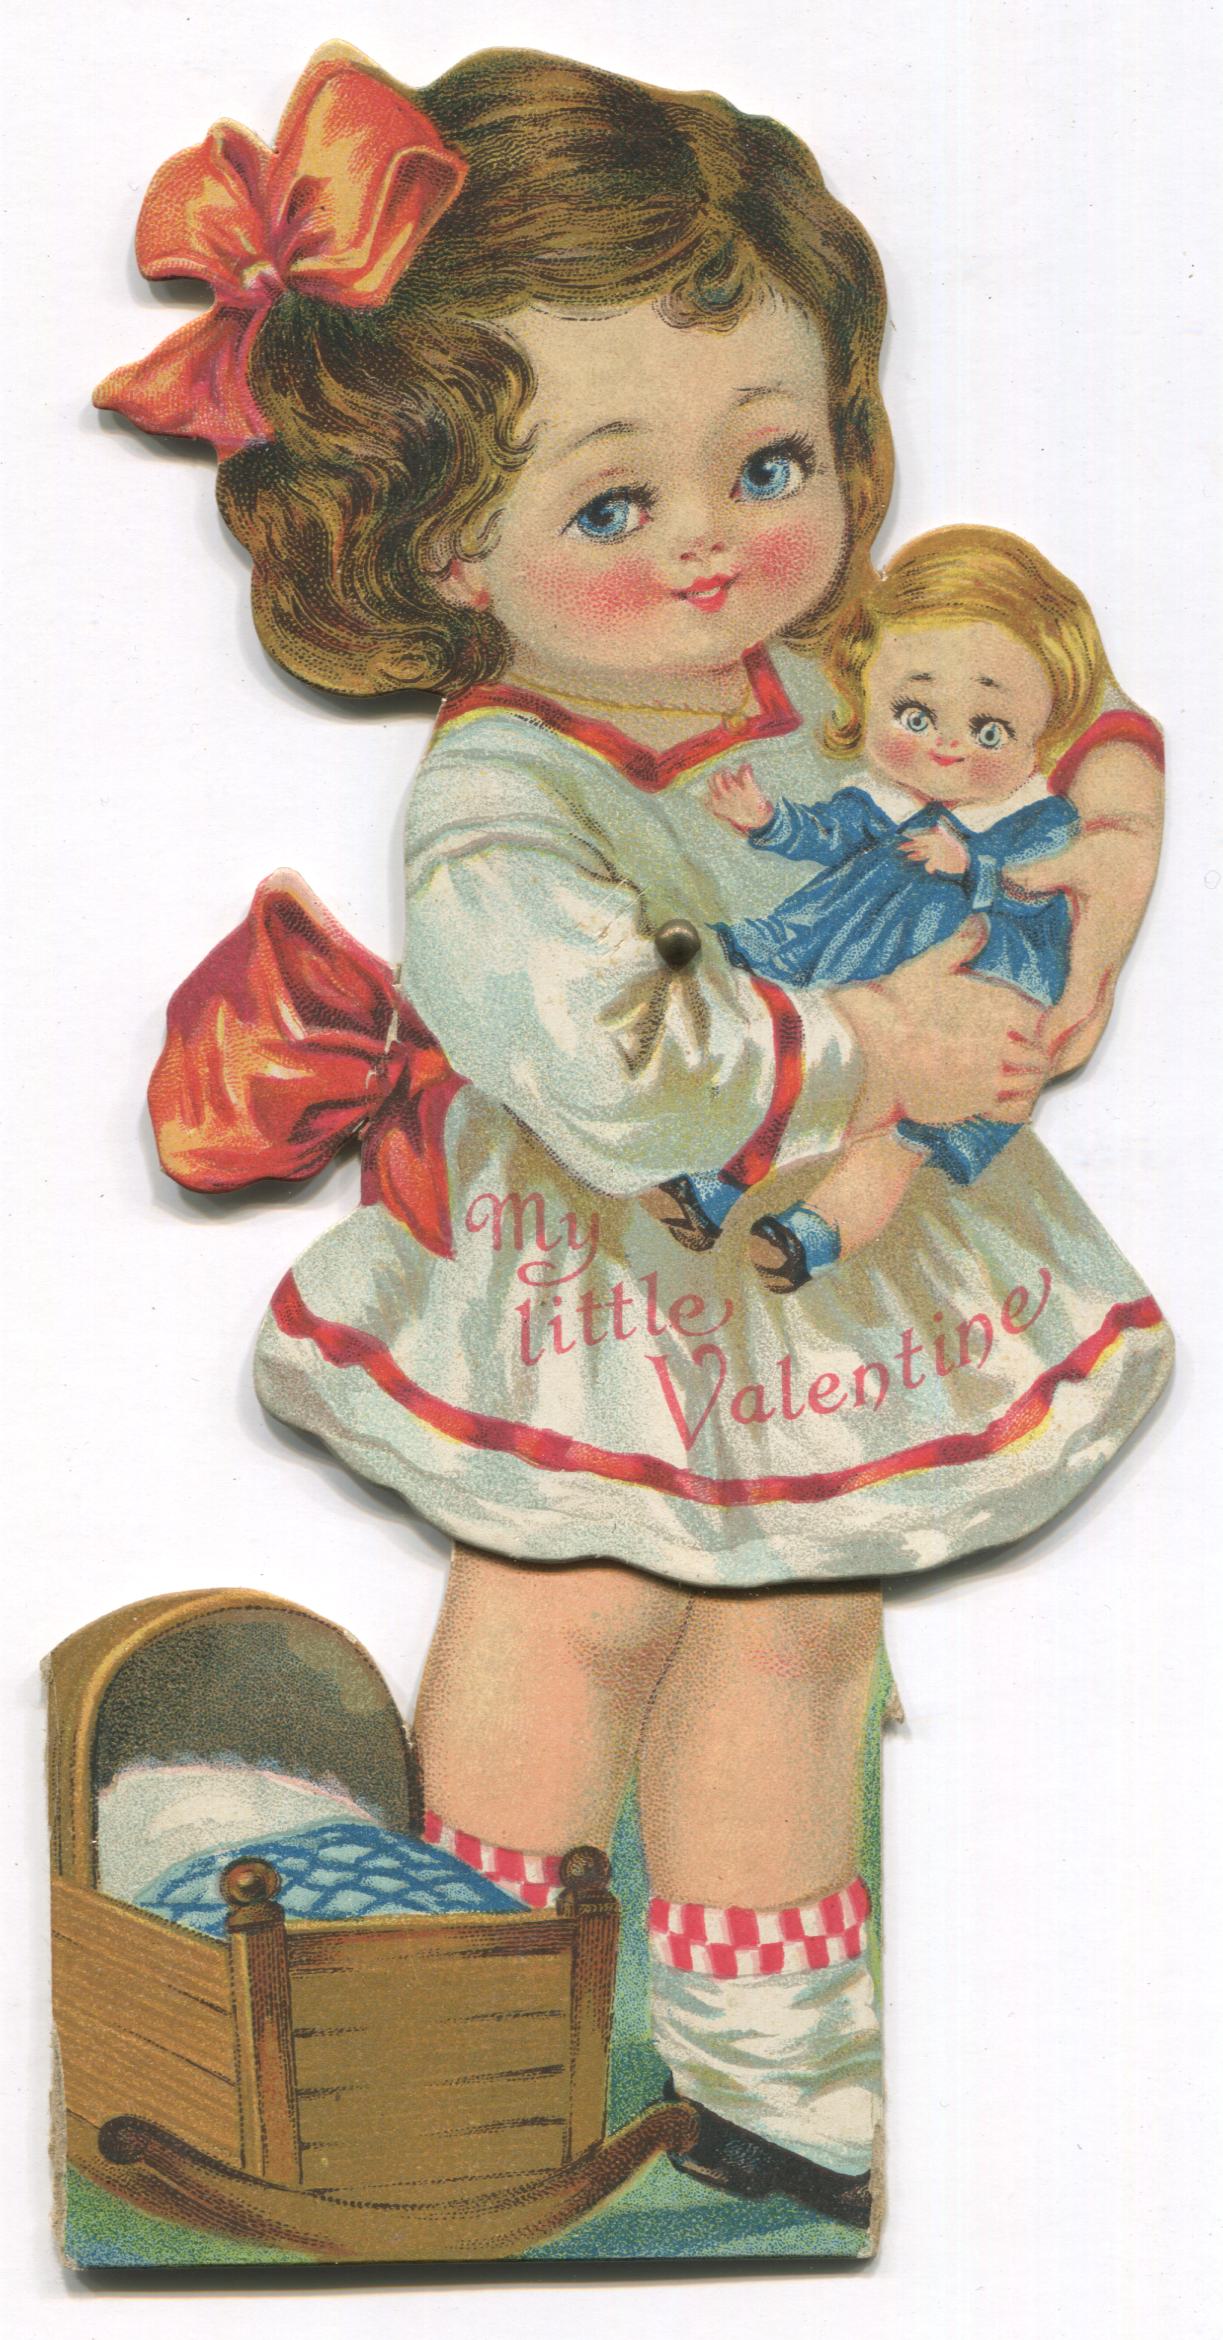 Die Cut Posable Antique Valentine Greeting Card- "My Little Valentine" - 3.5" x 7.5"